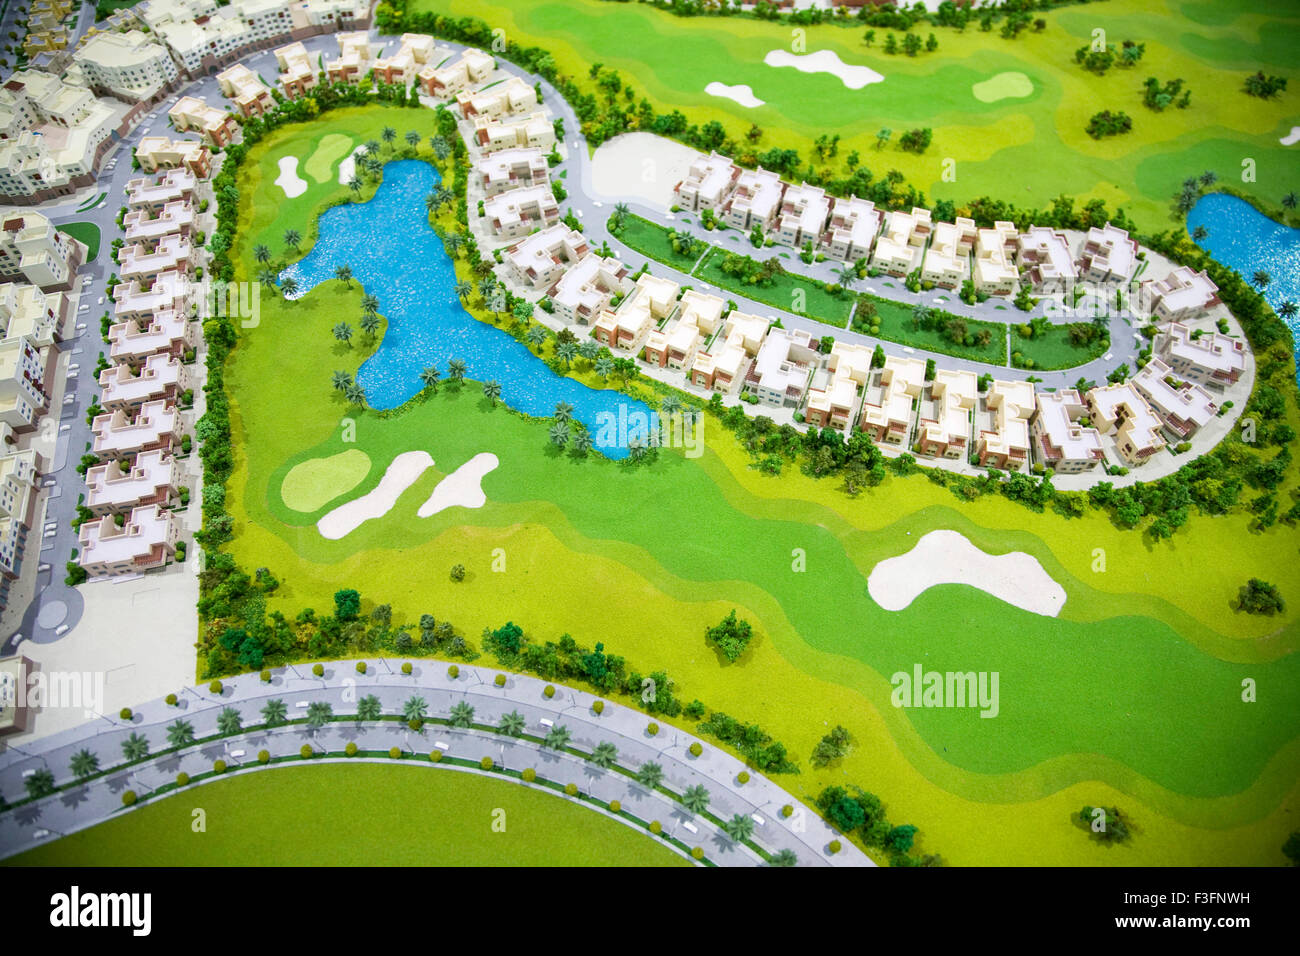 Global Village Dubai property model look comme un modèle graphique Banque D'Images